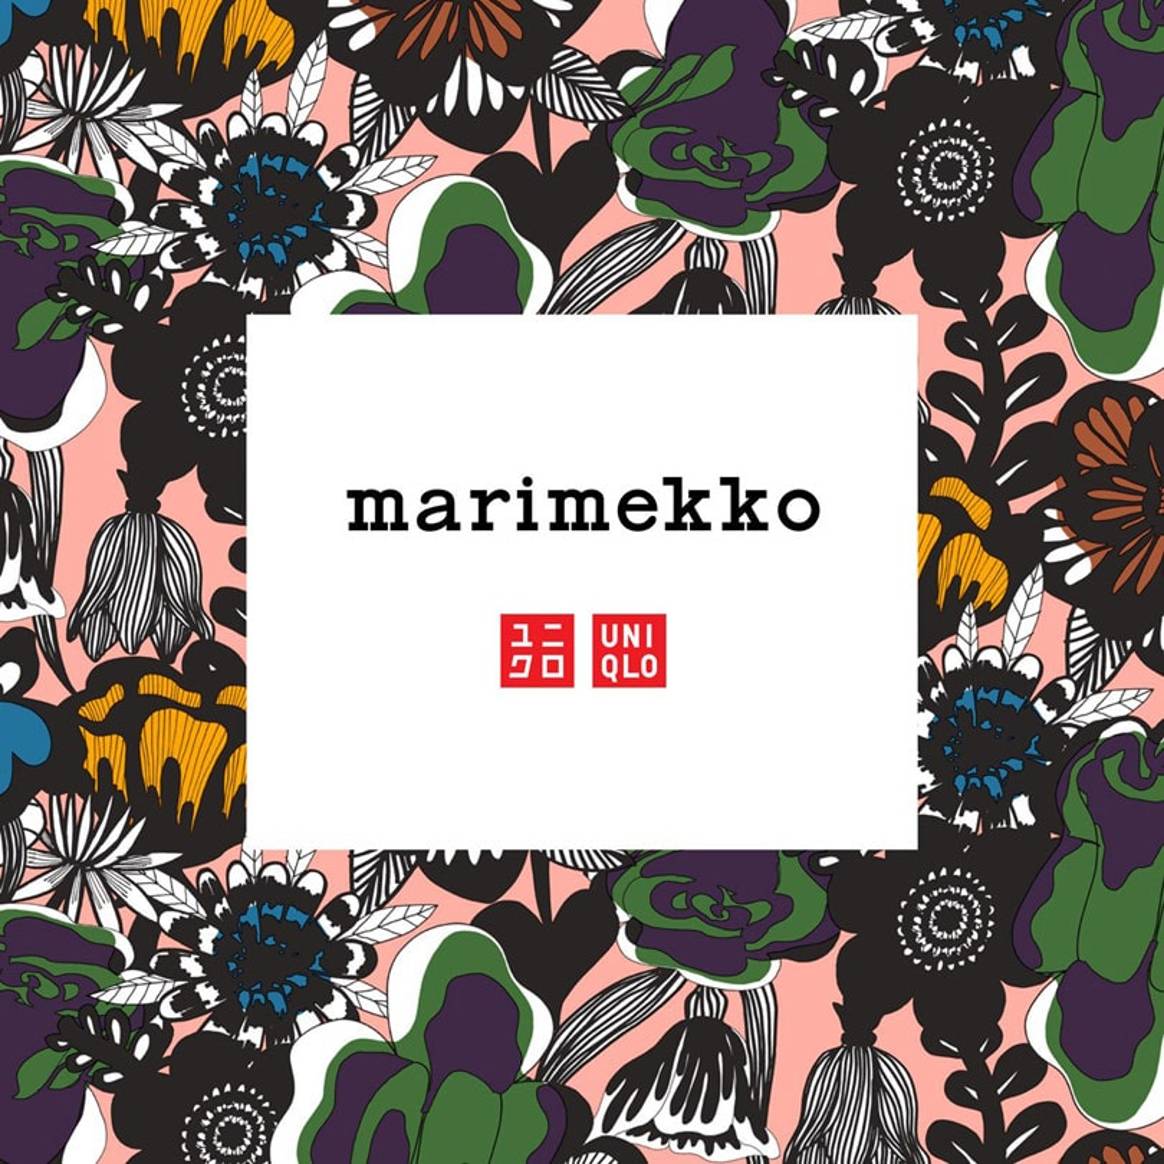 Marimekko y Uniqlo se alían para crear una colección